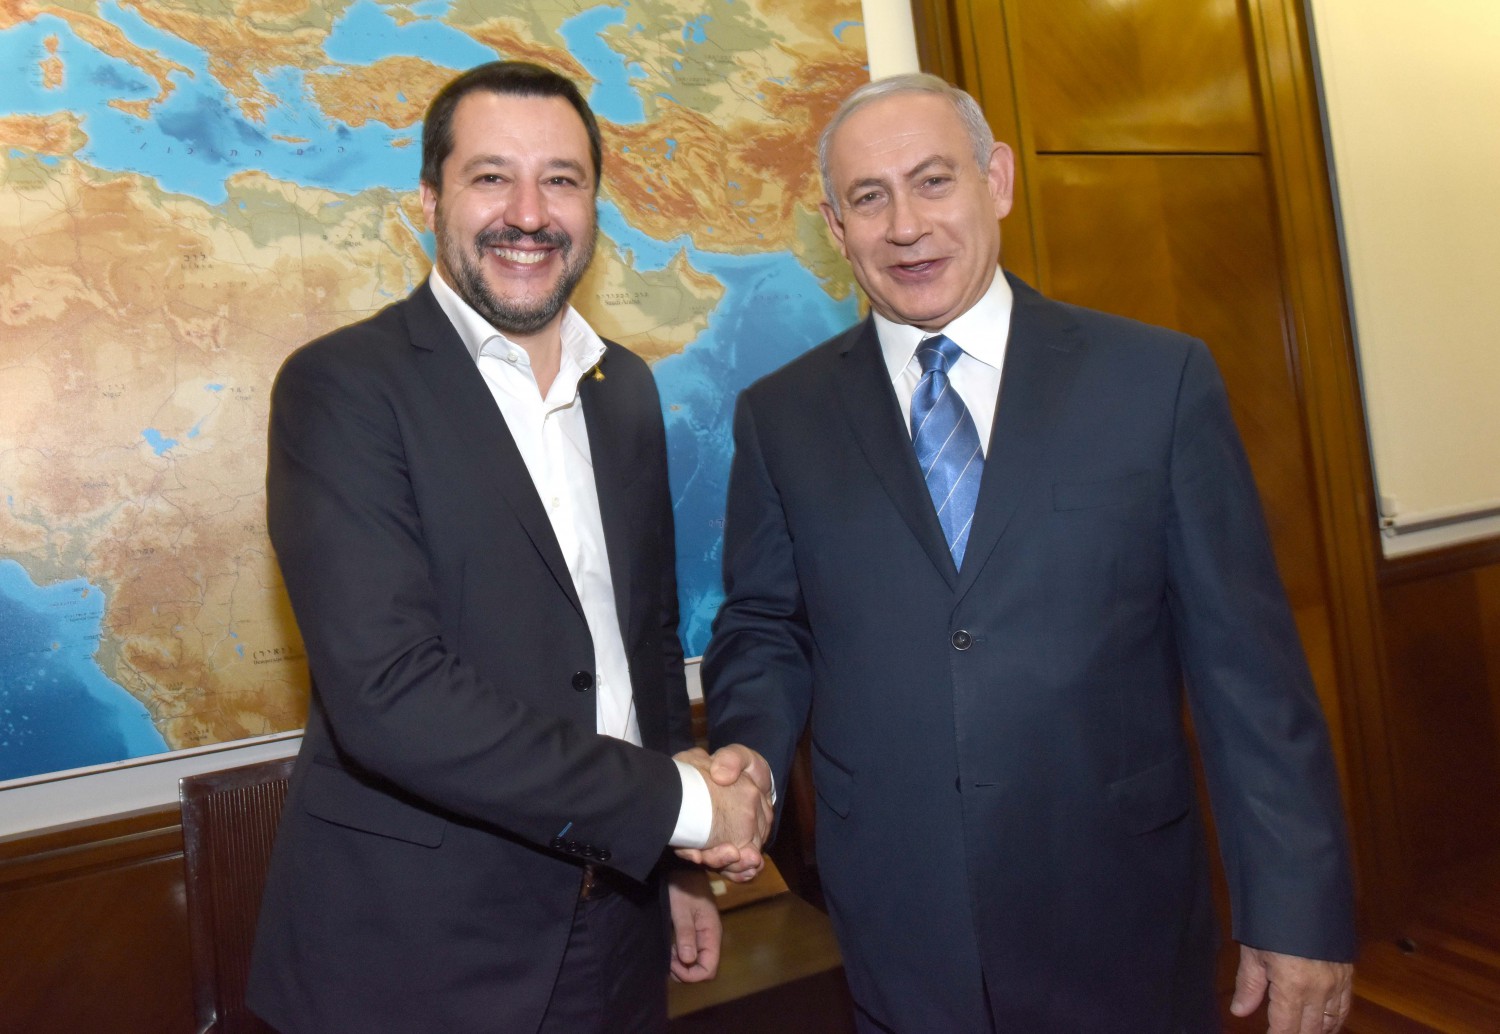 Risultato immagini per Salvini e Netanyahu immagini"